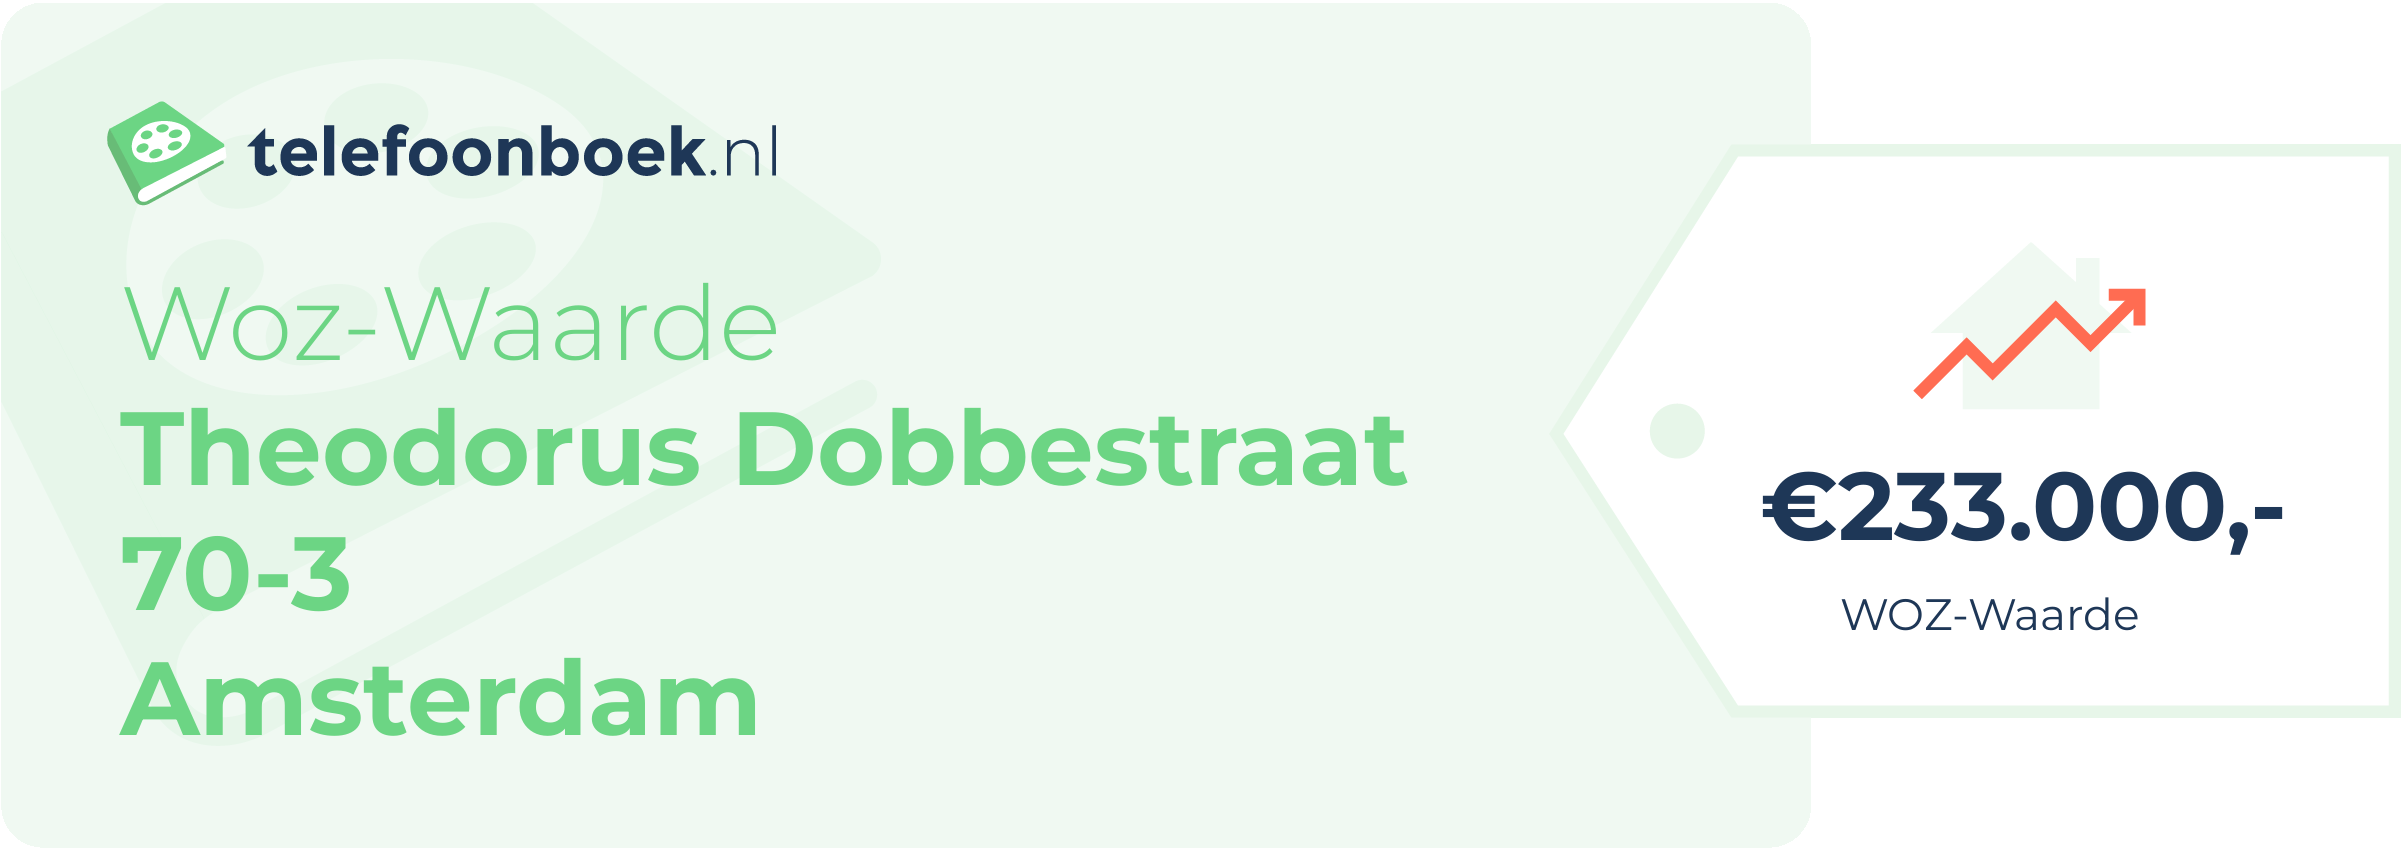 WOZ-waarde Theodorus Dobbestraat 70-3 Amsterdam